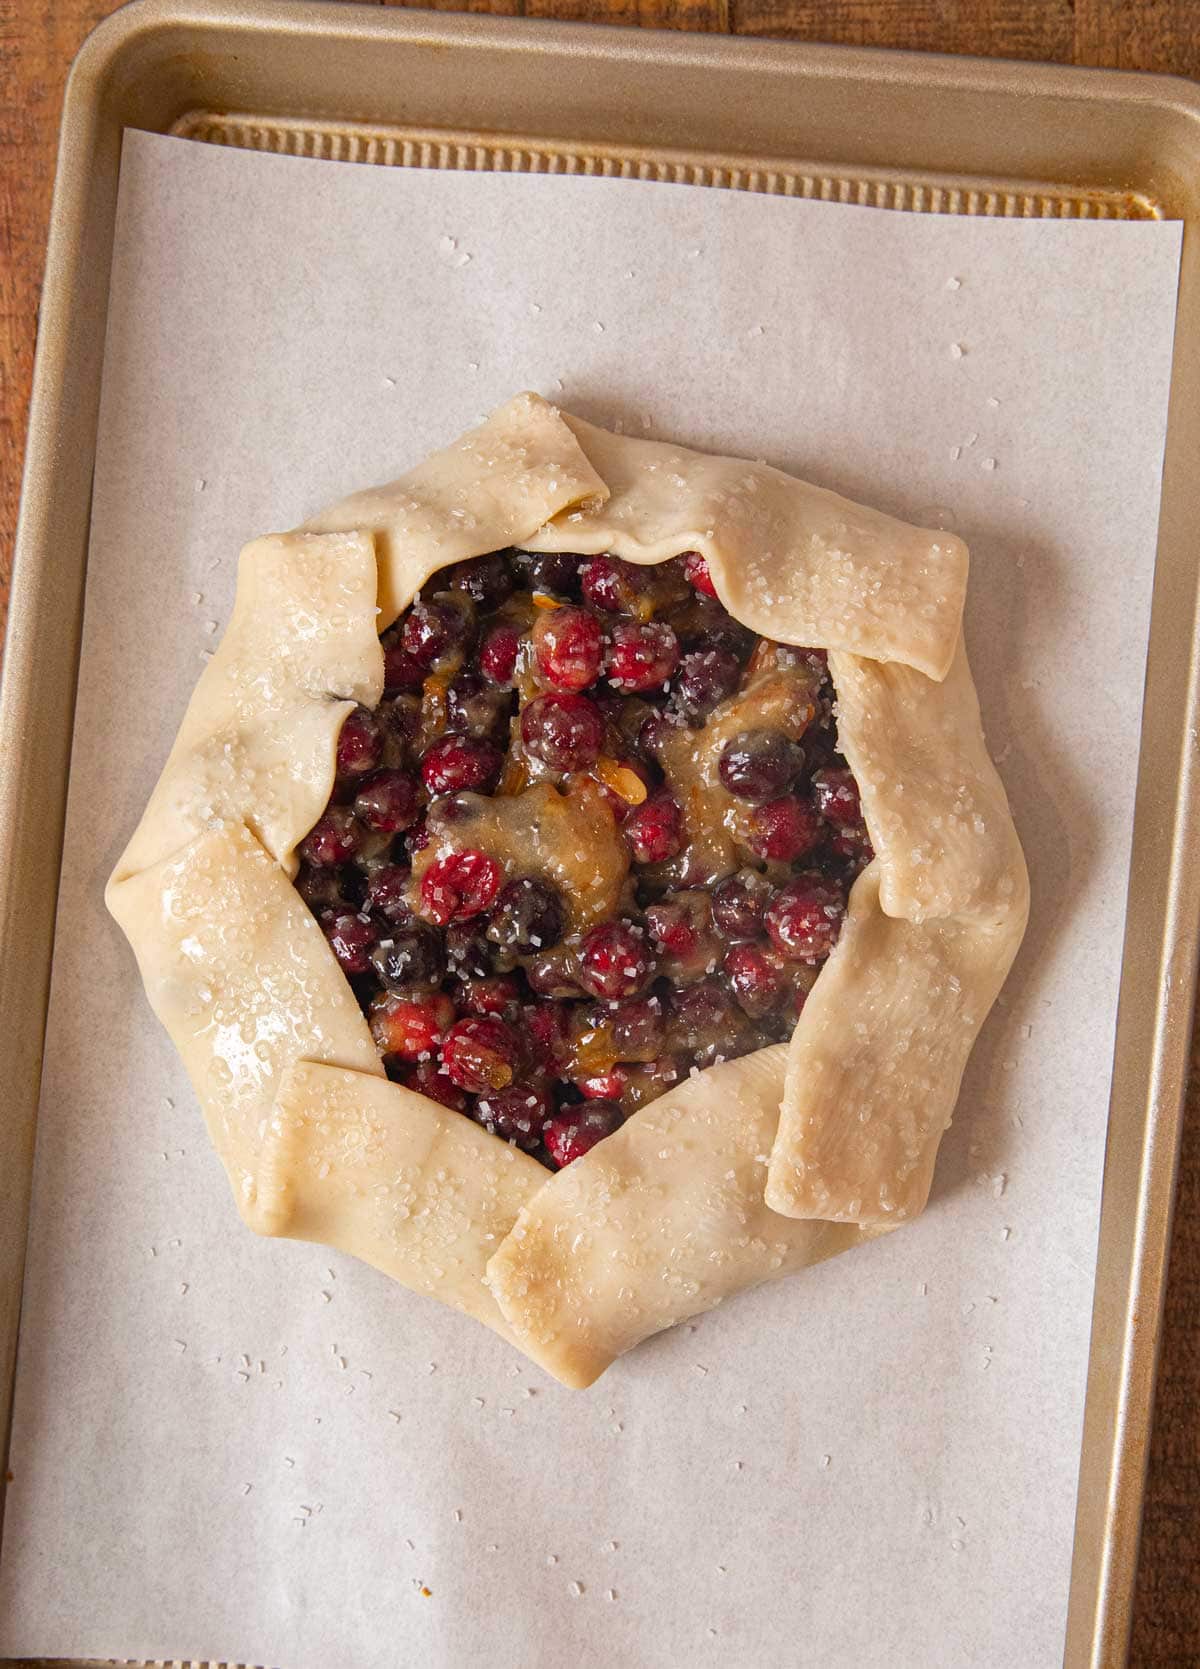 Rustic Cranberry Tart on baking sheet before baking